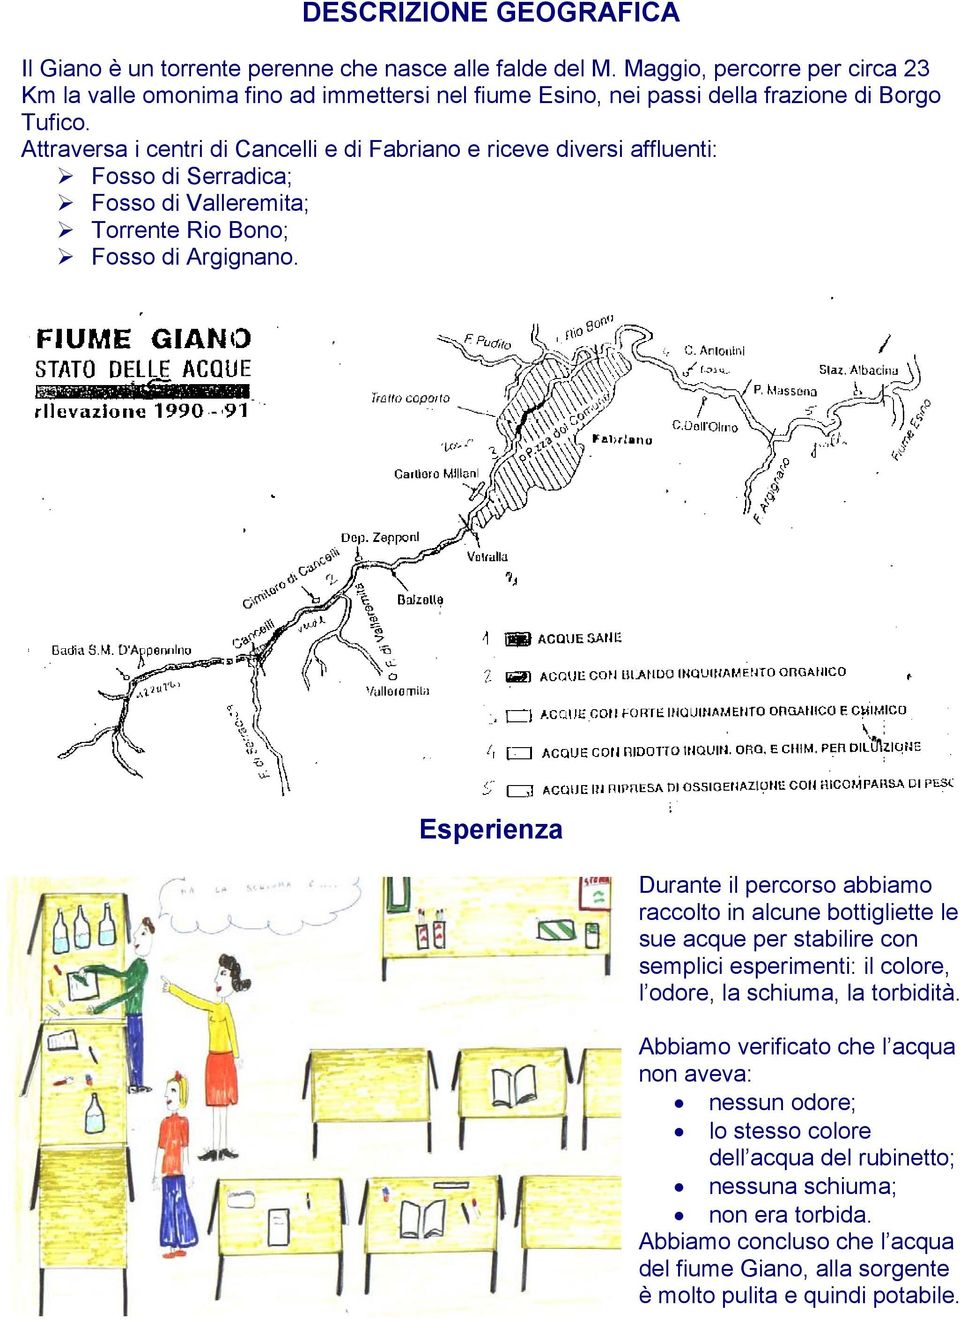 Attraversa i centri di Cancelli e di Fabriano e riceve diversi affluenti: Fosso di Serradica; Fosso di Valleremita; Torrente Rio Bono; Fosso di Argignano.